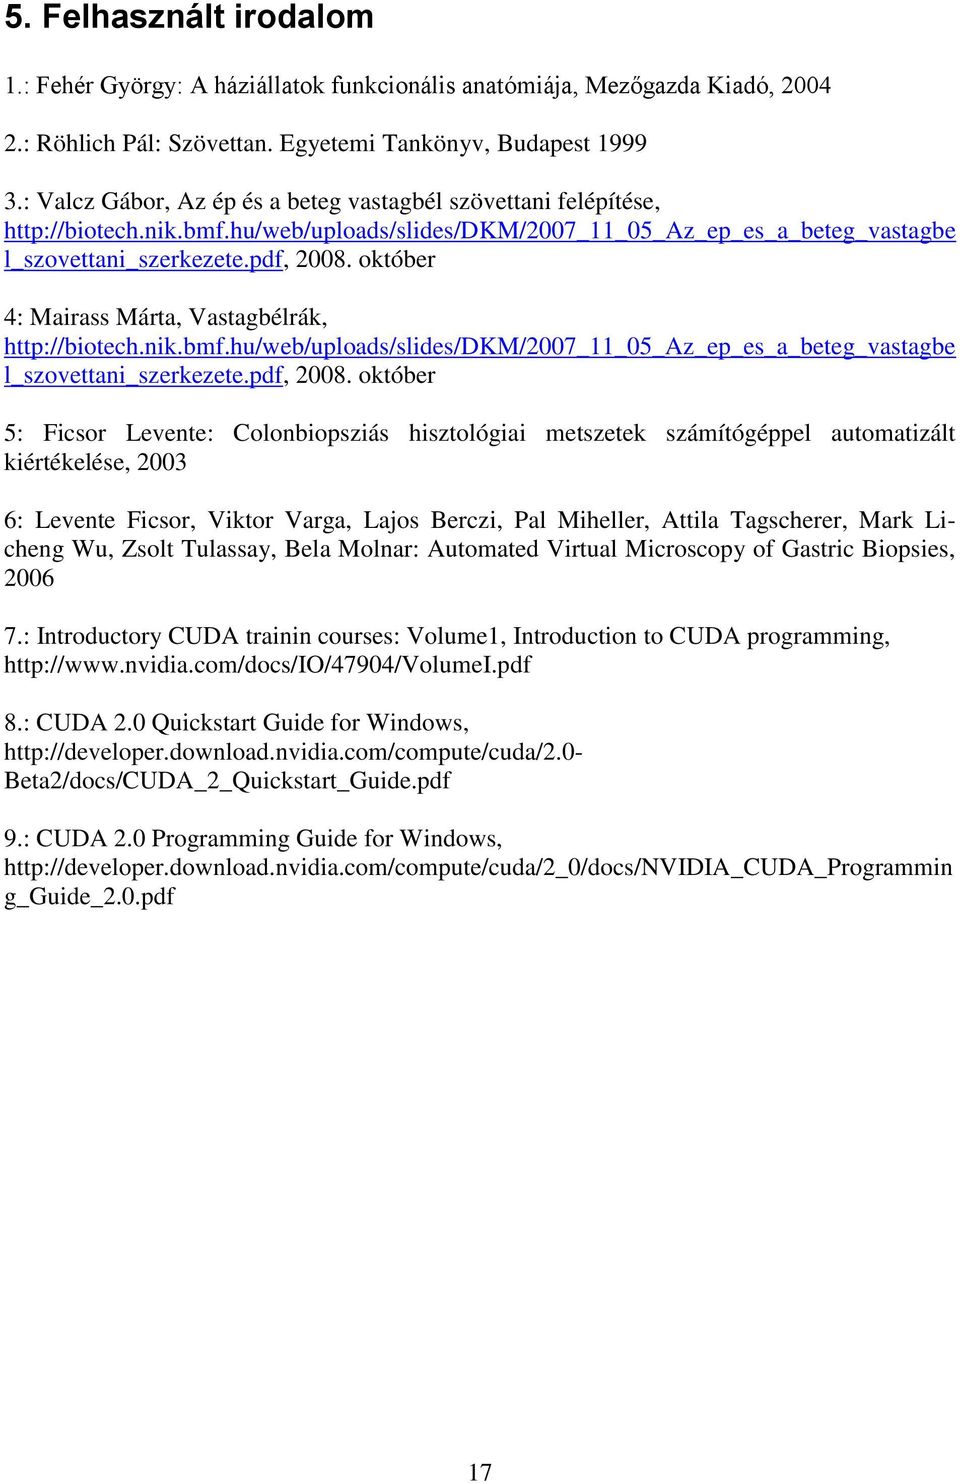 október 4: Mairass Márta, Vastagbélrák, http://biotech.nik.bmf.hu/web/uploads/slides/dkm/2007_11_05_az_ep_es_a_beteg_vastagbe l_szovettani_szerkezete.pdf, 2008.